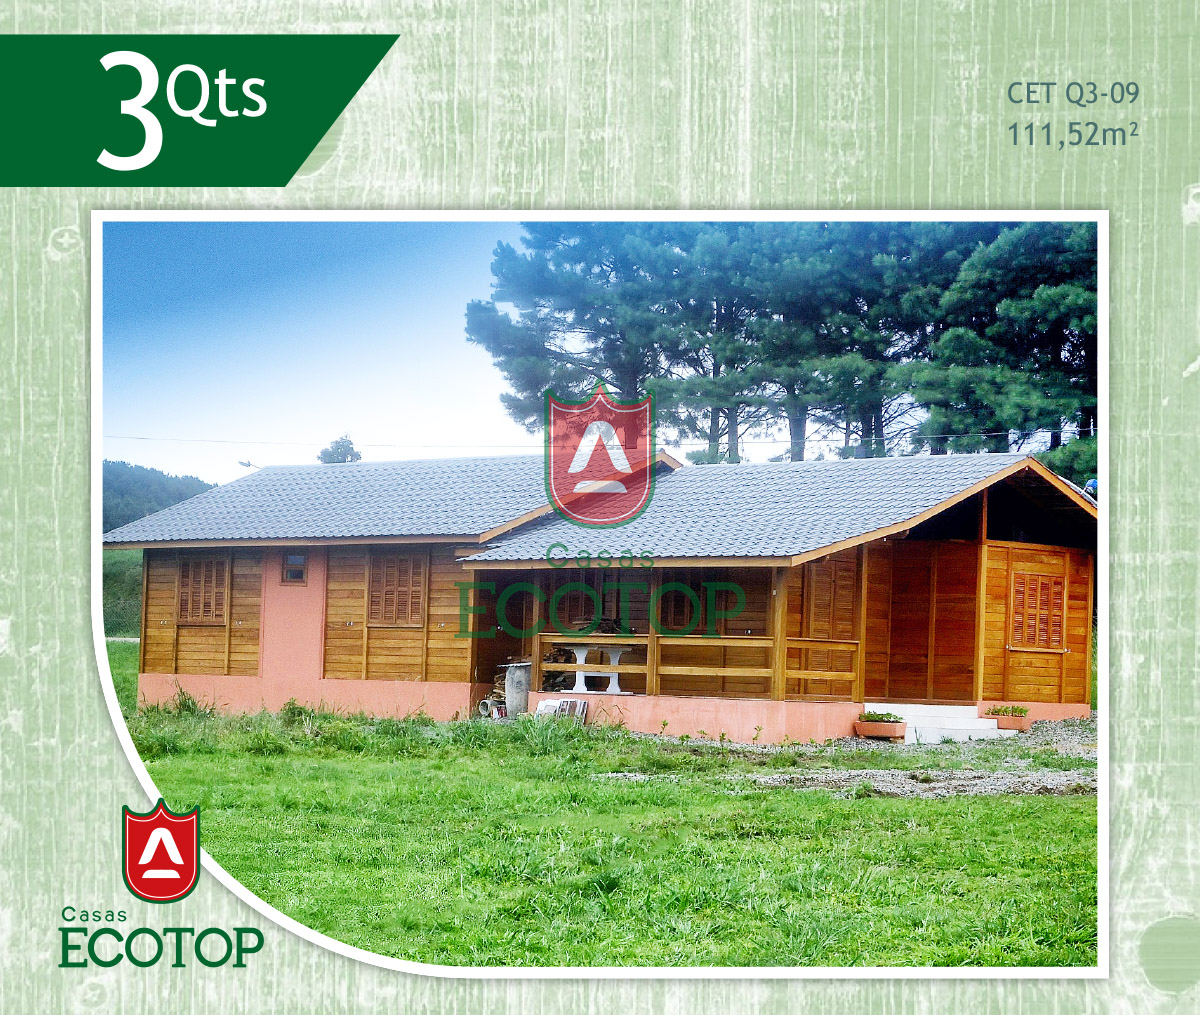 cet-09-fachada-casas-de-madeira-ecotop.cdr